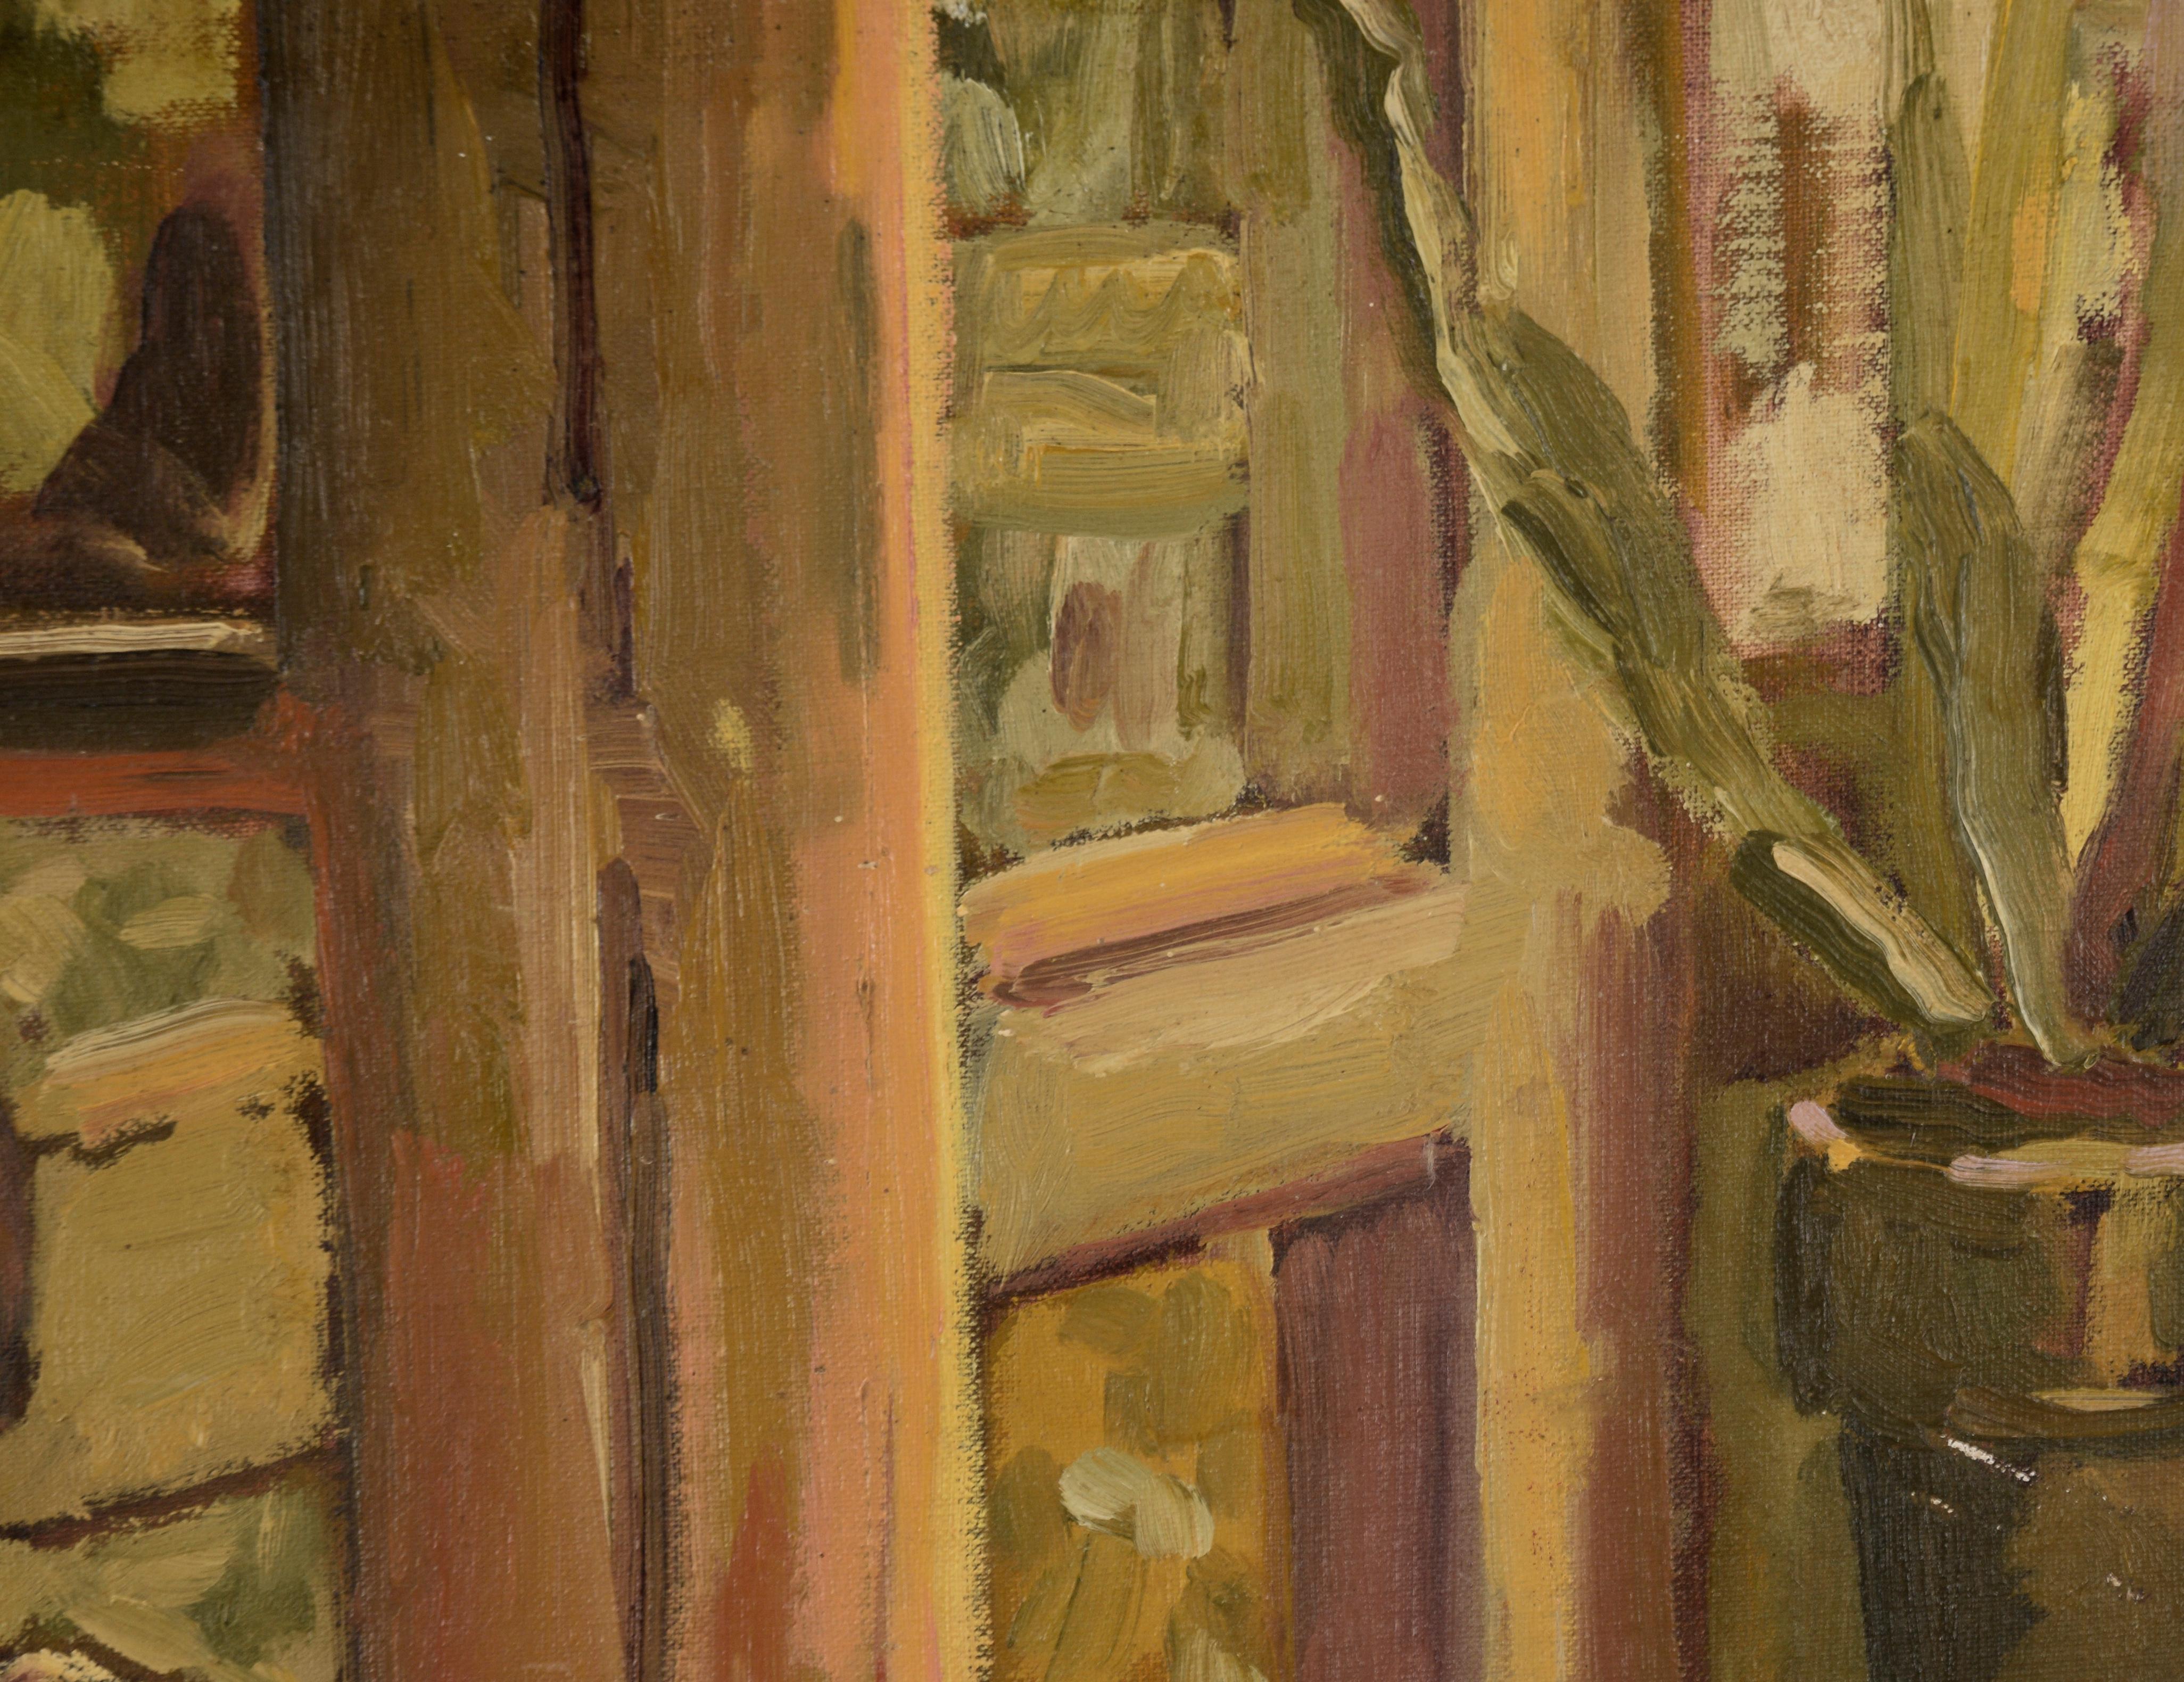 Stimmungsvolle Darstellung einer Frau an einem sonnigen Morgen von Shirley Polovy (Amerikanerin, geb. 1942). Auf der linken Seite der Komposition sitzt eine Frau mit einem leichten Lächeln im Schatten. Hinter ihr und auf der rechten Seite befinden